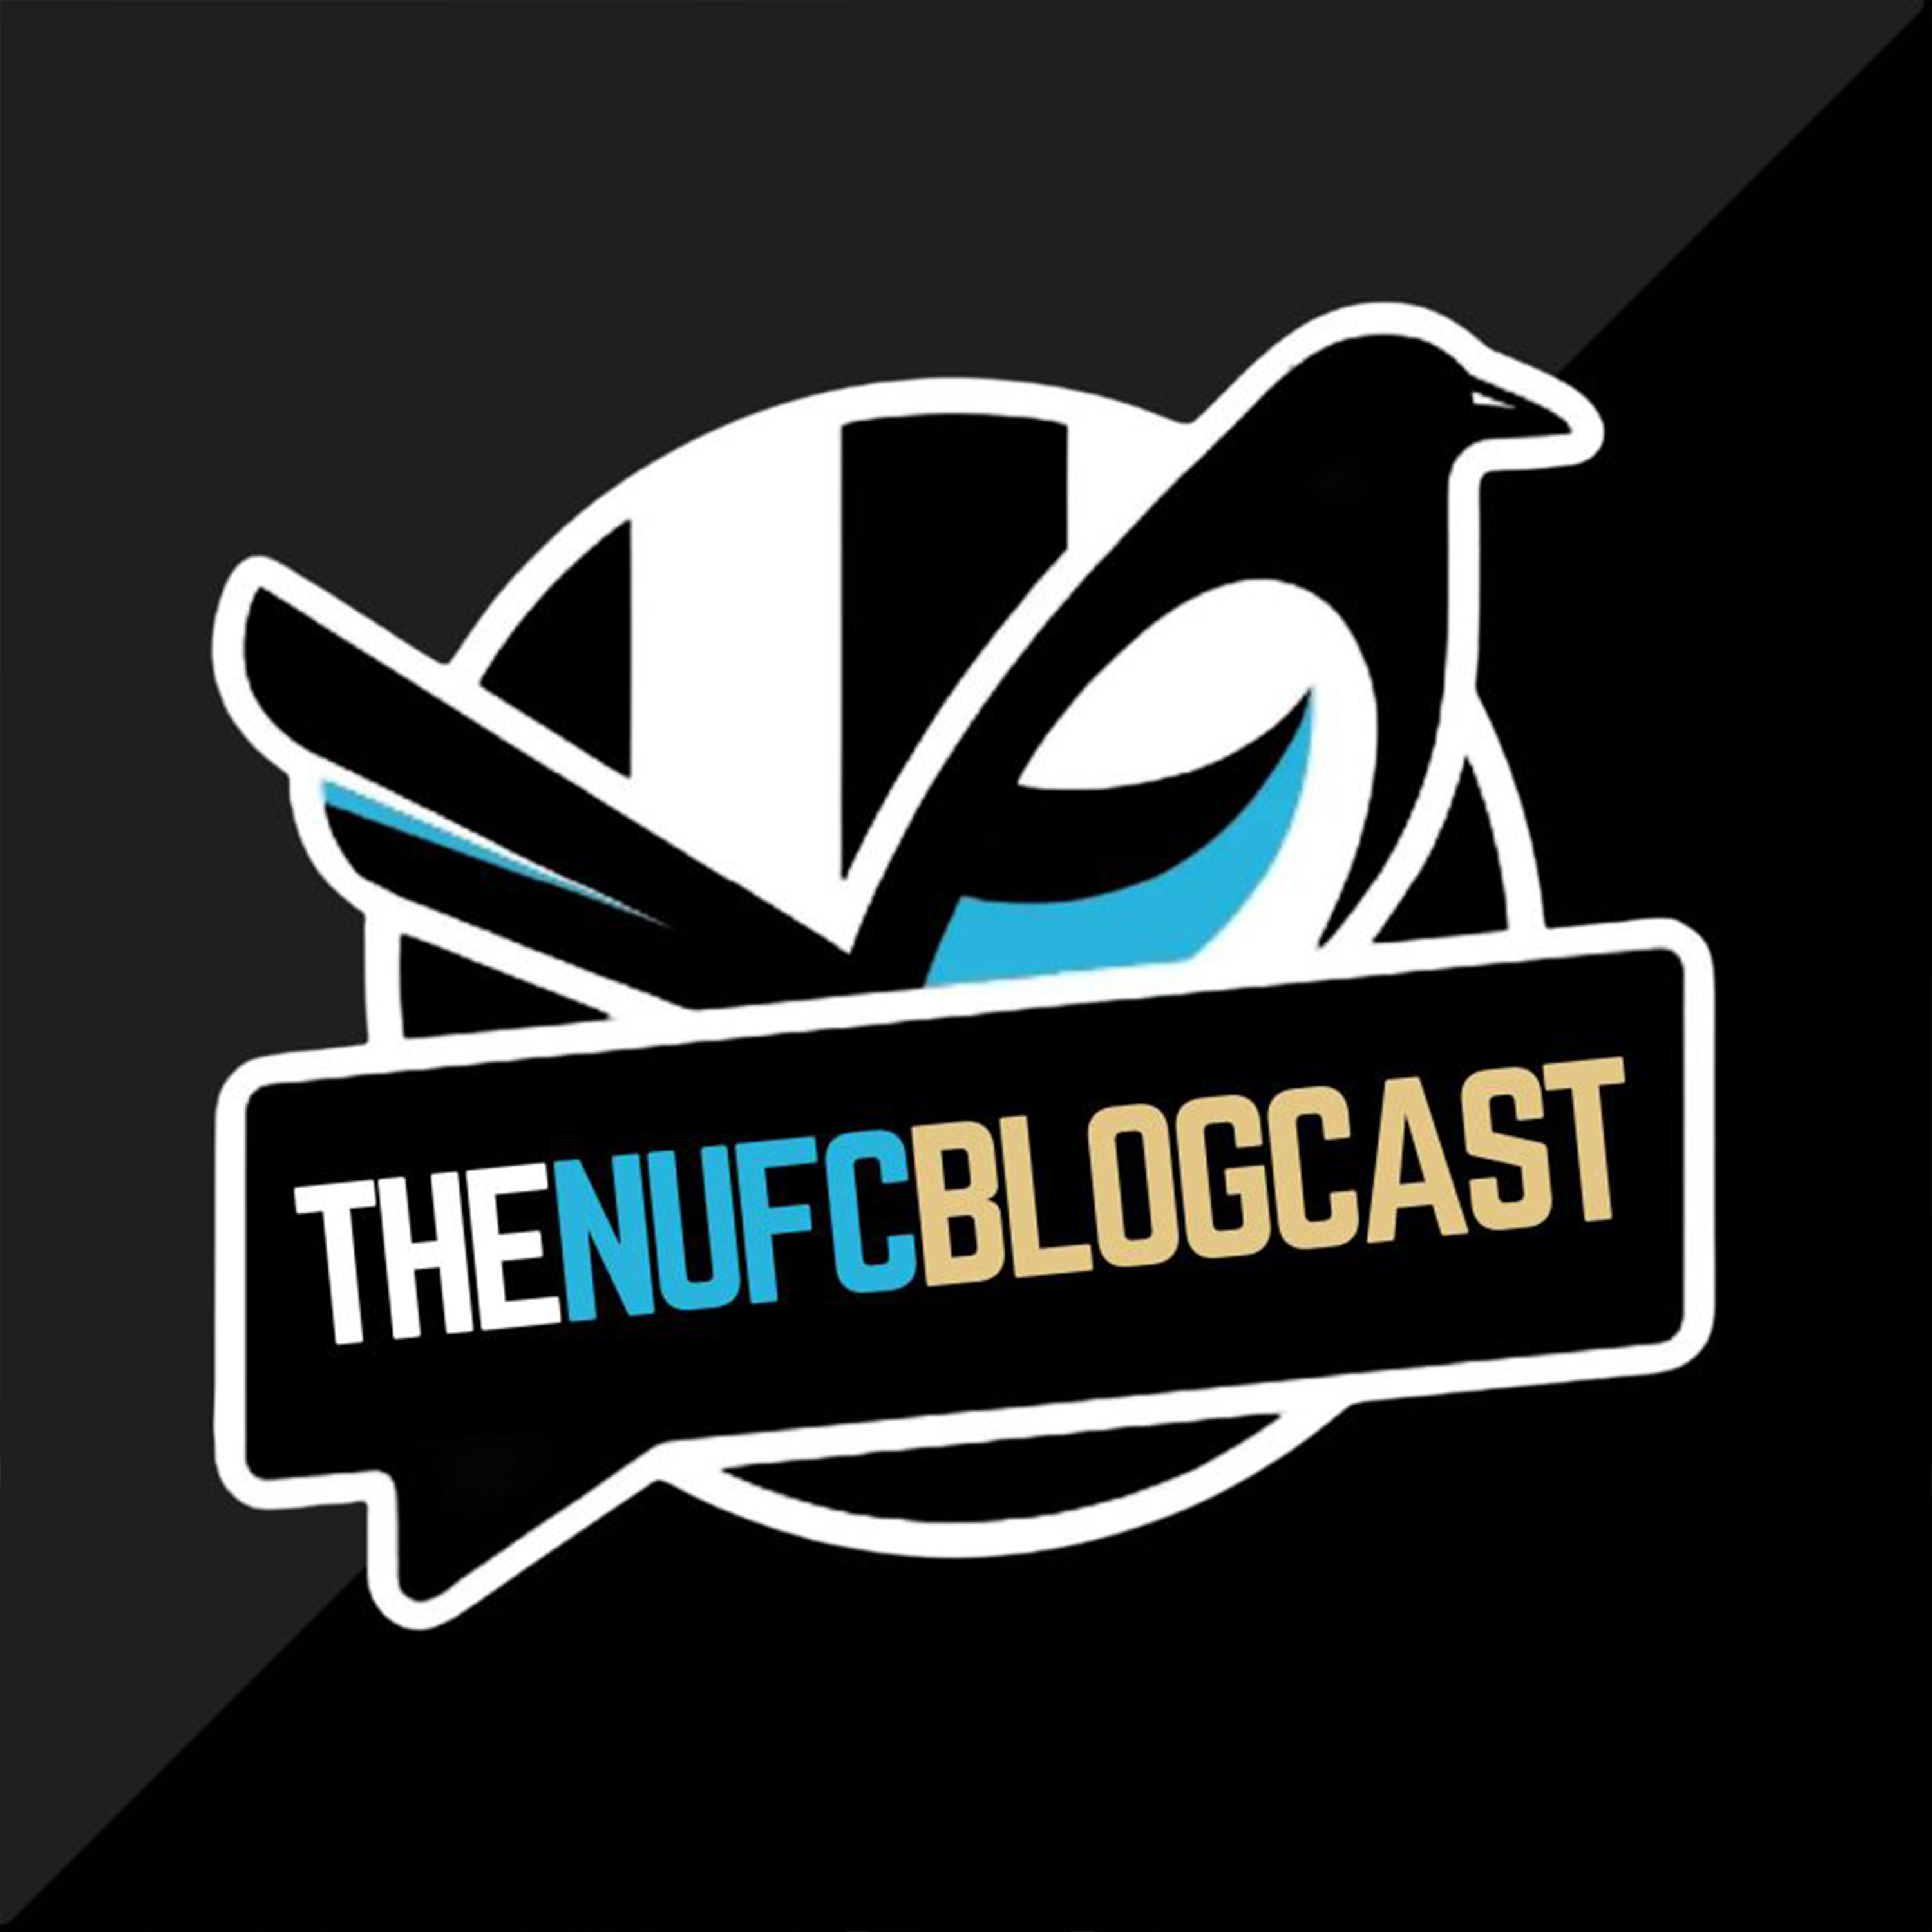 The NUFC Blogcast